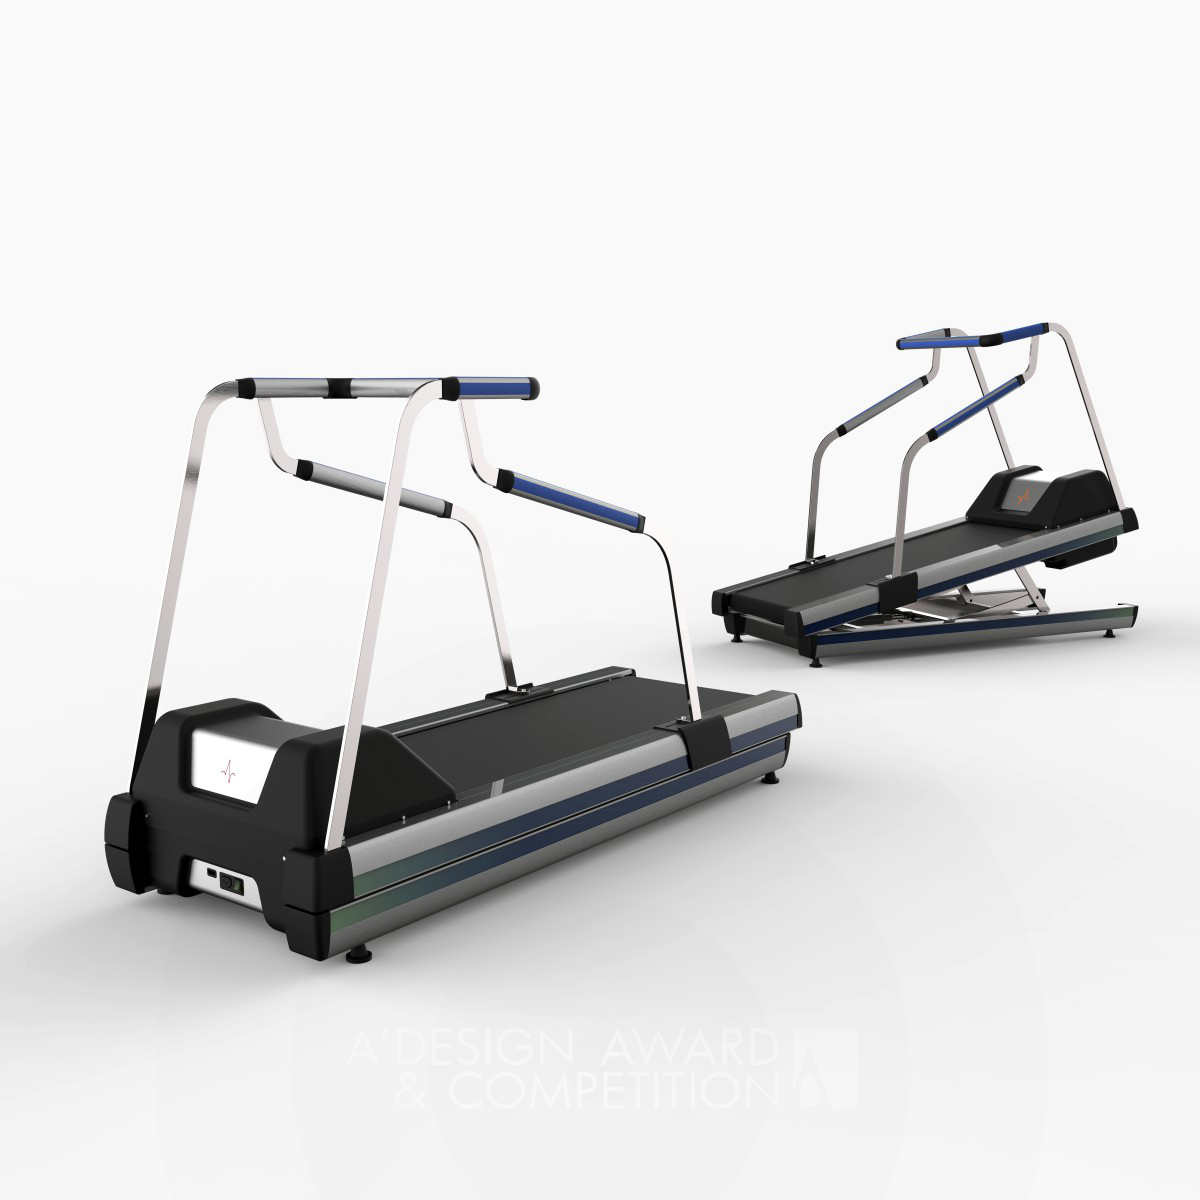 Good Medical Treadmill Design